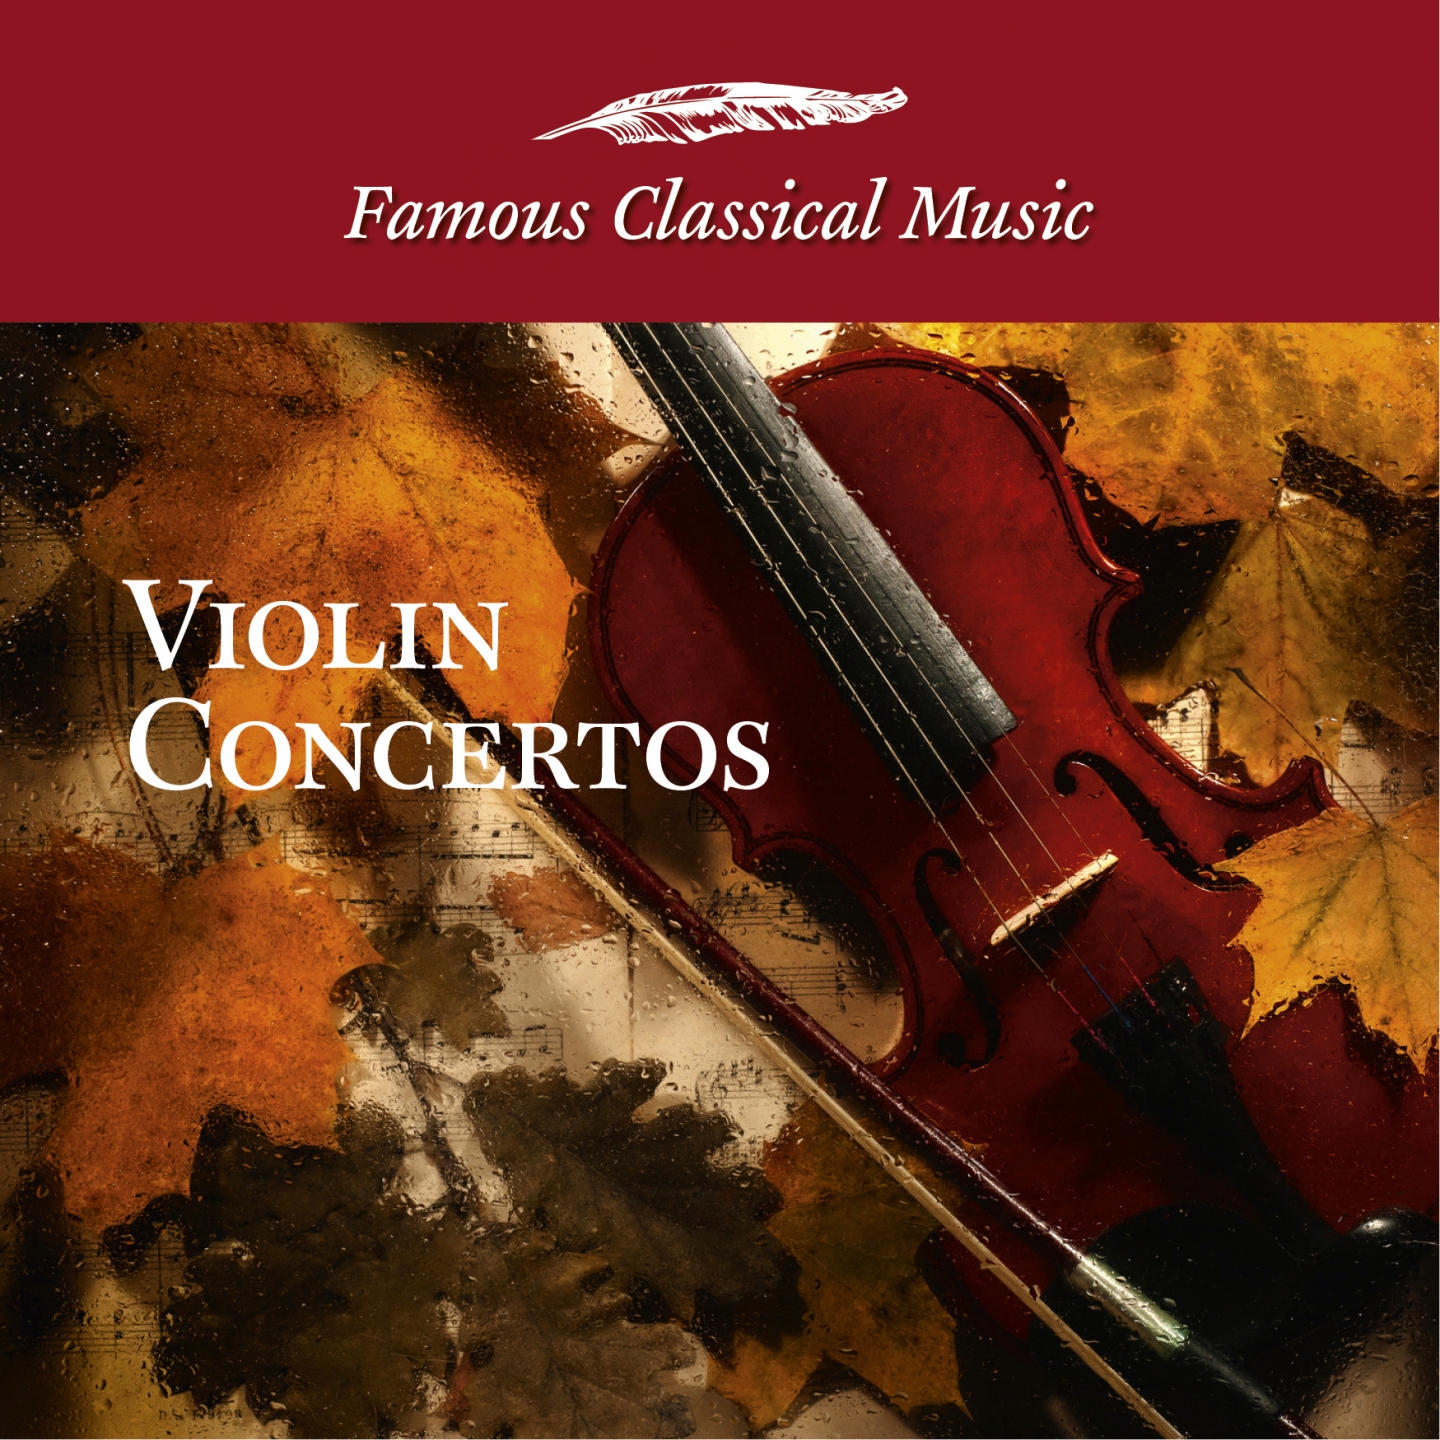 Violin Concerto in E Minor, Op. 64: Allegro molto appassionata